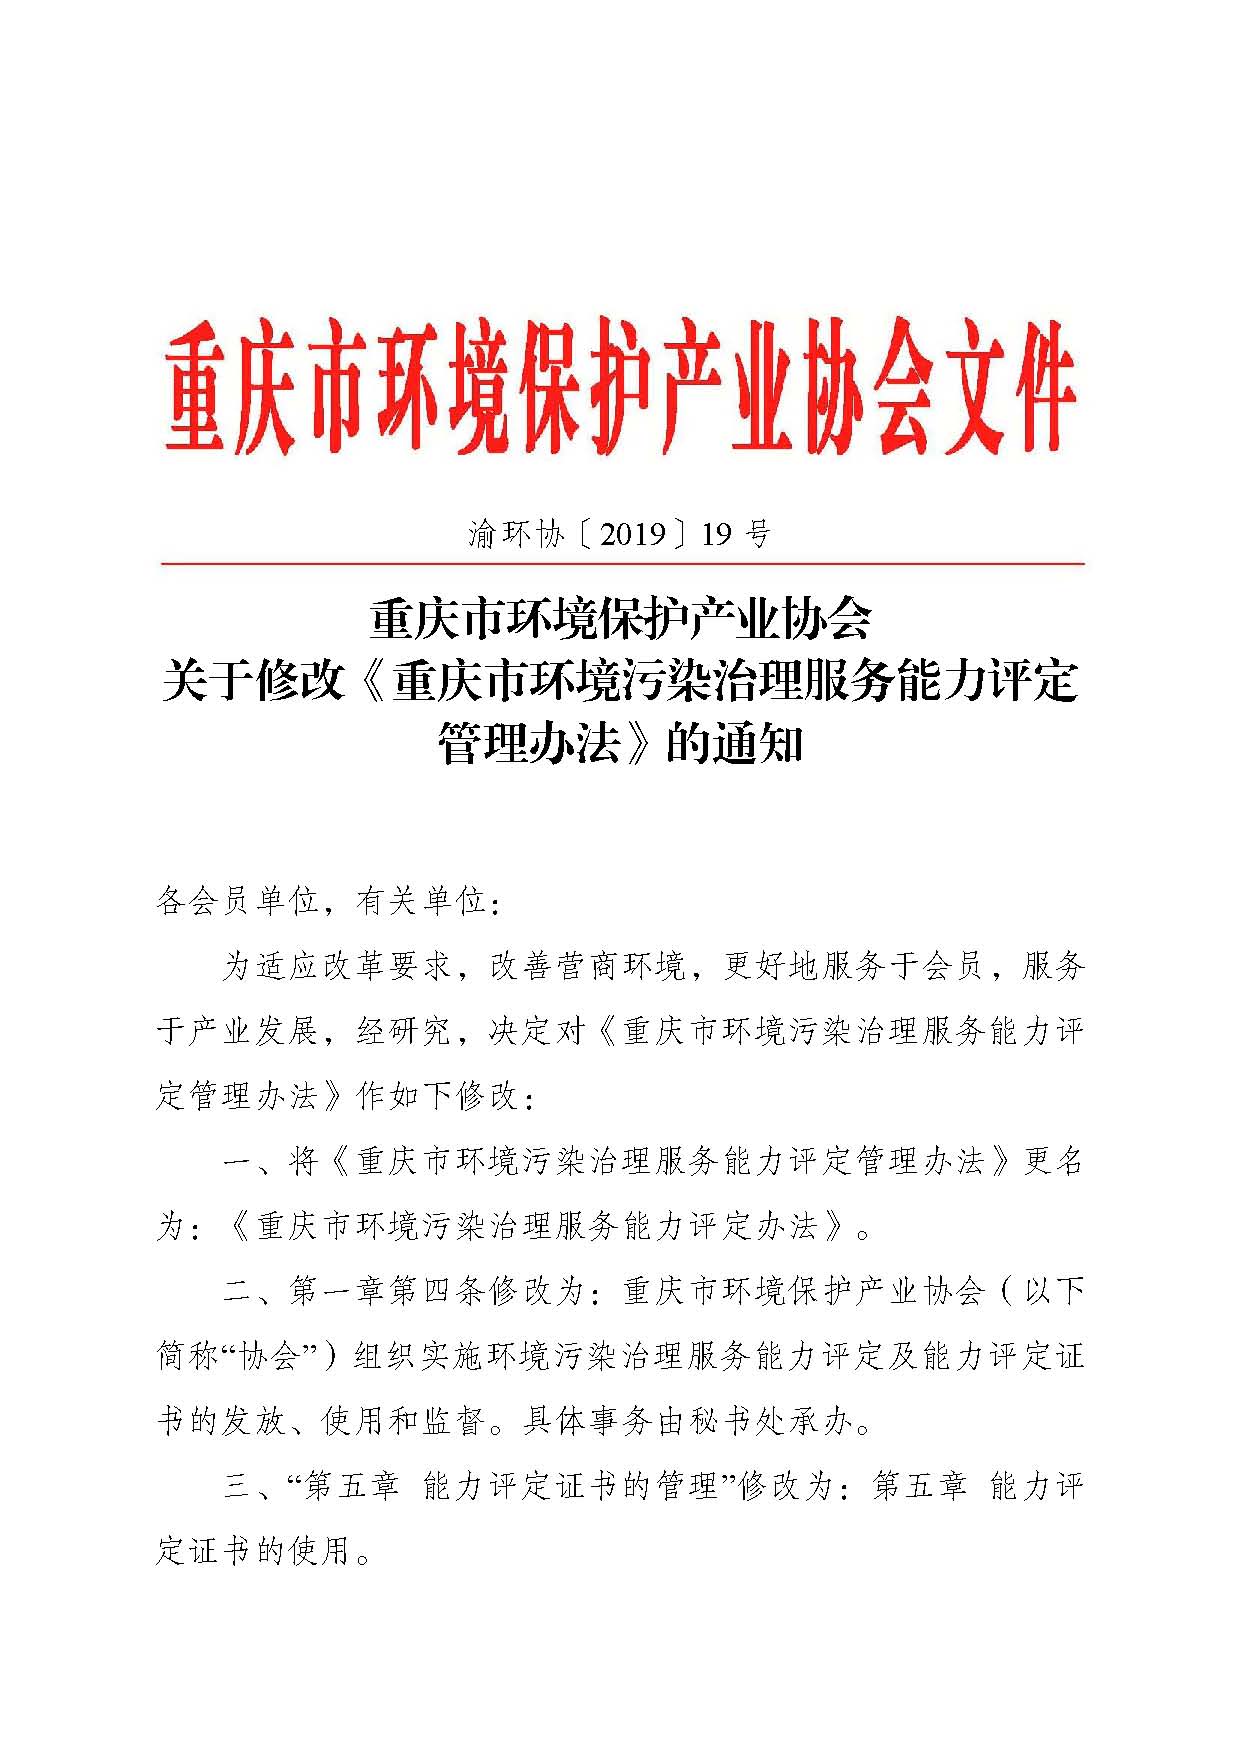 重庆市环境保护产业协会关于修改《重庆市环境污染治理服务能力评定管理办法》的通知-副本_页面_1